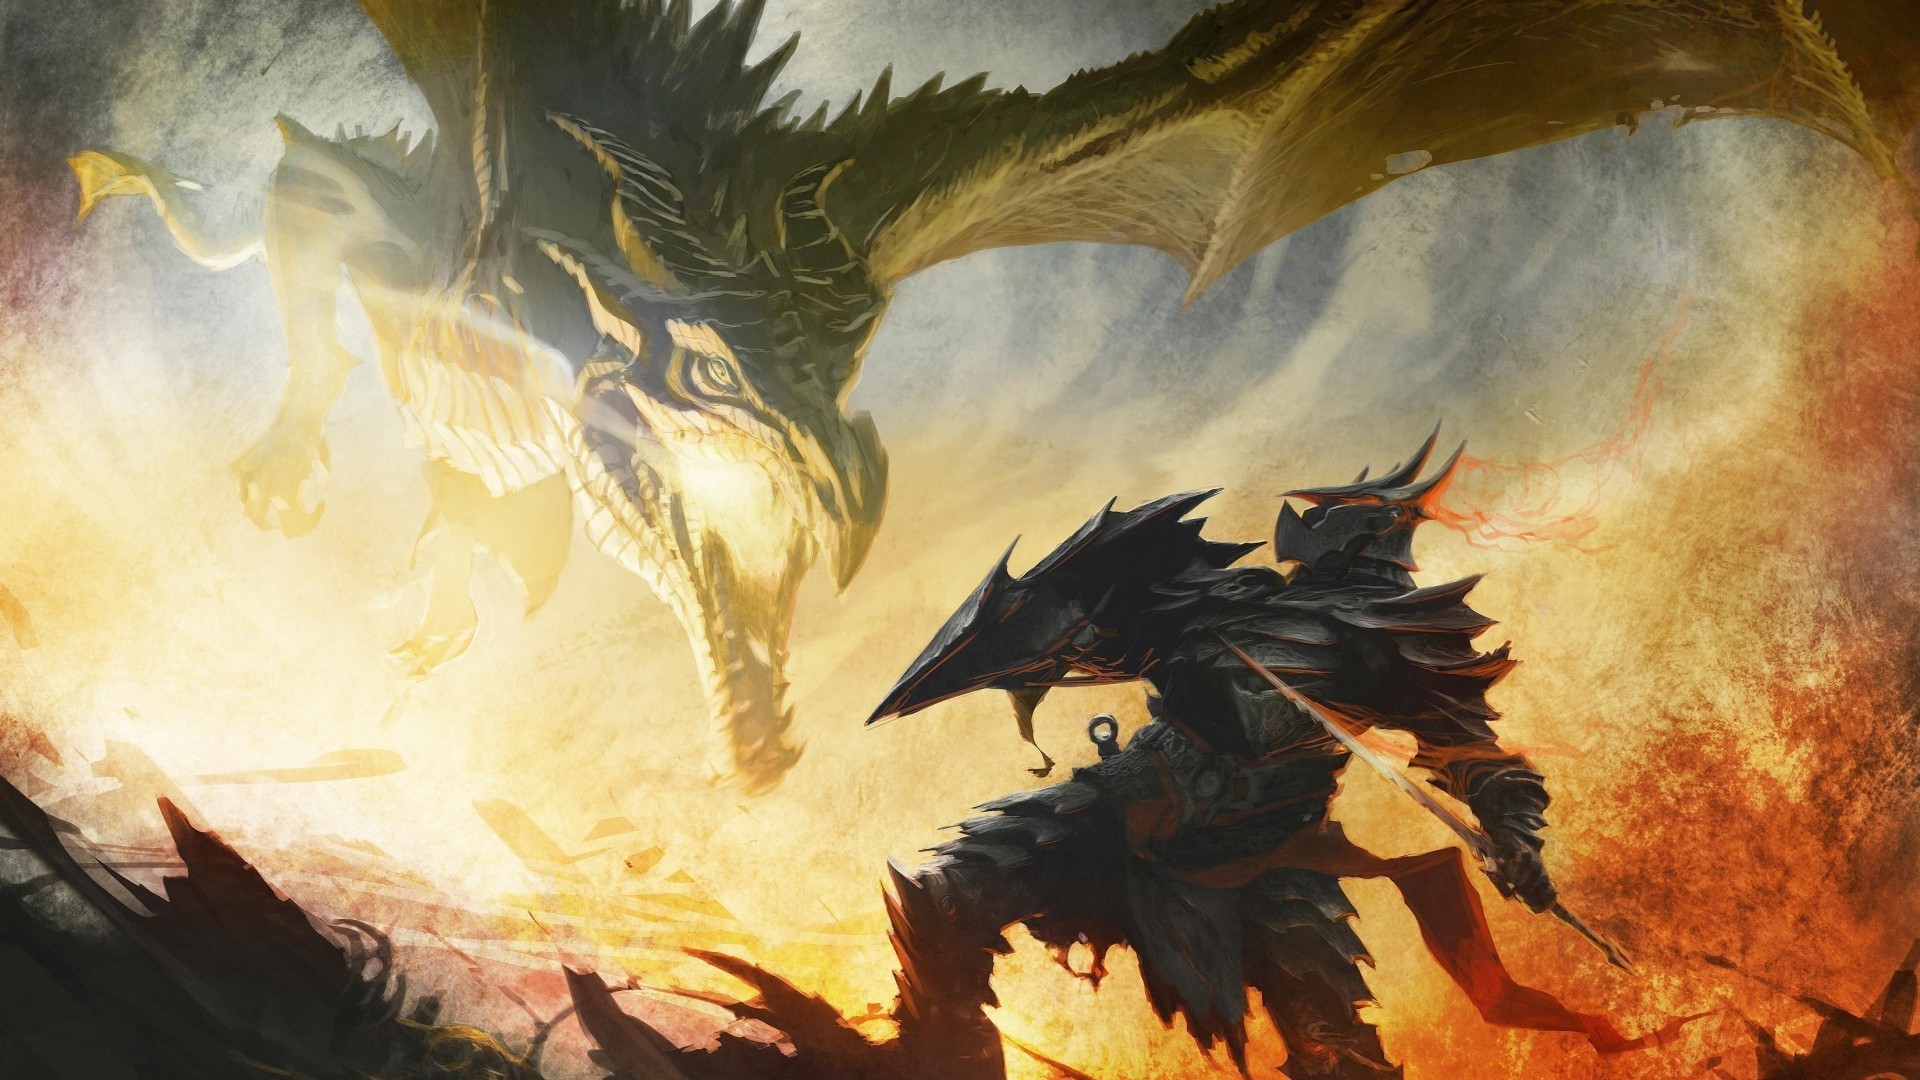 The Elder Scrolls V Skyrim, Alduin, Dragonborn Wallpapers HD / Desktop and Mobile Backgrounds